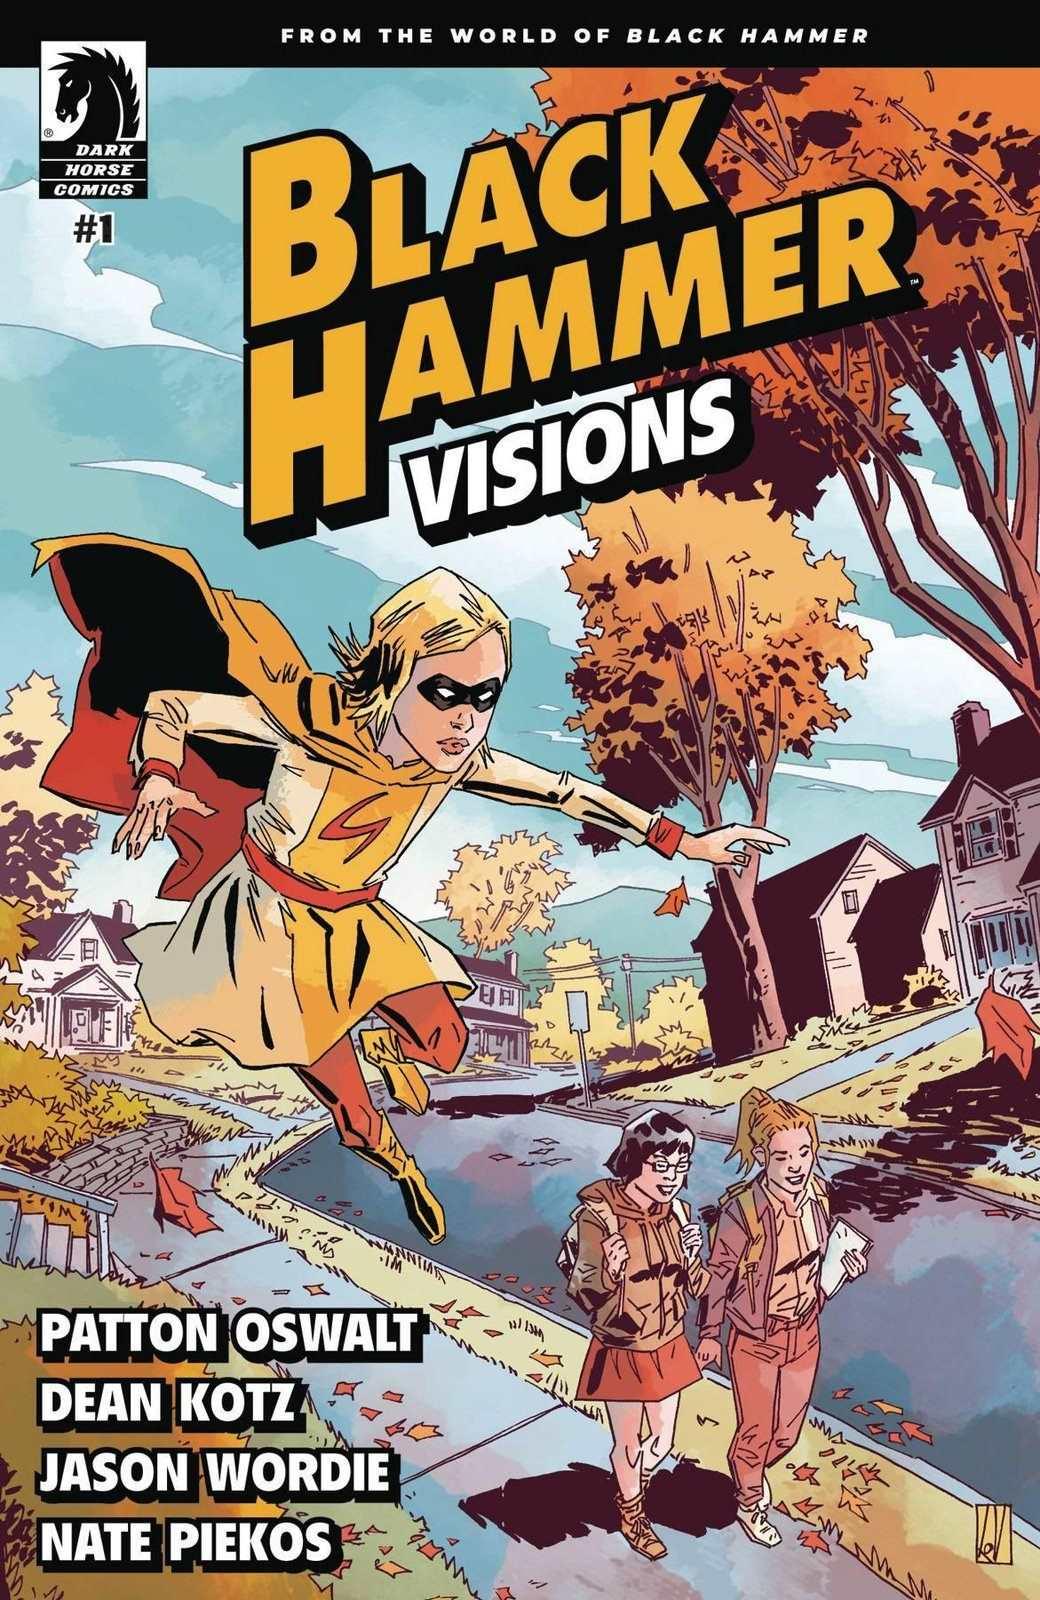 BLACK HAMMER VISIONS #1 (OF 8) (SHIPS 02-10-21) - PCKComics.com